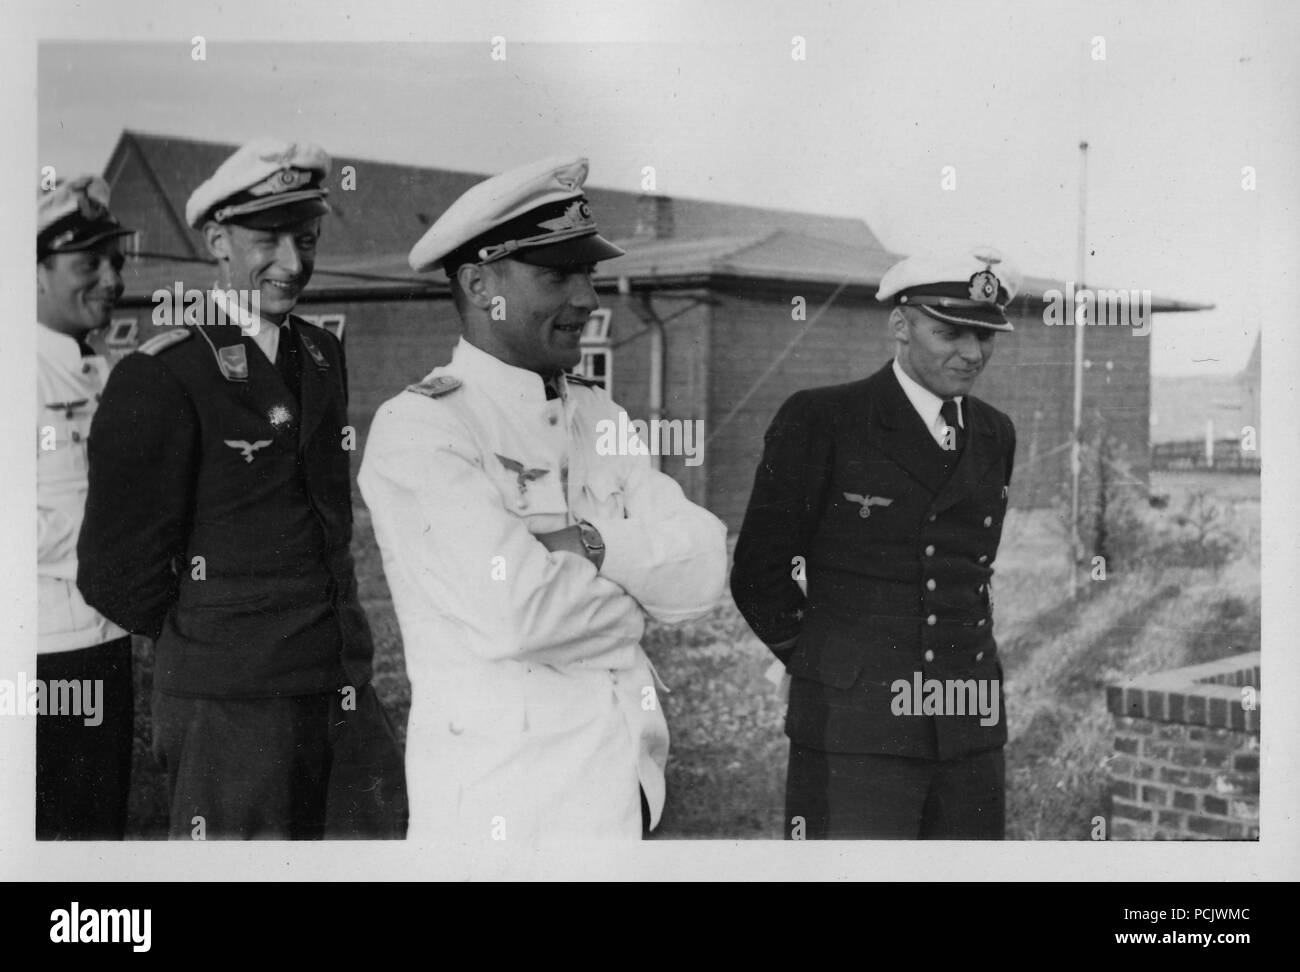 Droit de l'album photo de l'Oberleutnant Wilhelm Gaul : Willi Gaul (à droite) dans l'uniforme de la Kriegsmarine se tient avec les agents de la Luftwaffe en uniforme d'été. La Gaule sera servi avec 1. Staffel, Küstenfliegergruppe 106 comme un observateur de l'équipage de la marine en 1939-1940 jusqu'à ce qu'il a transférées à la Luftwaffe. Banque D'Images